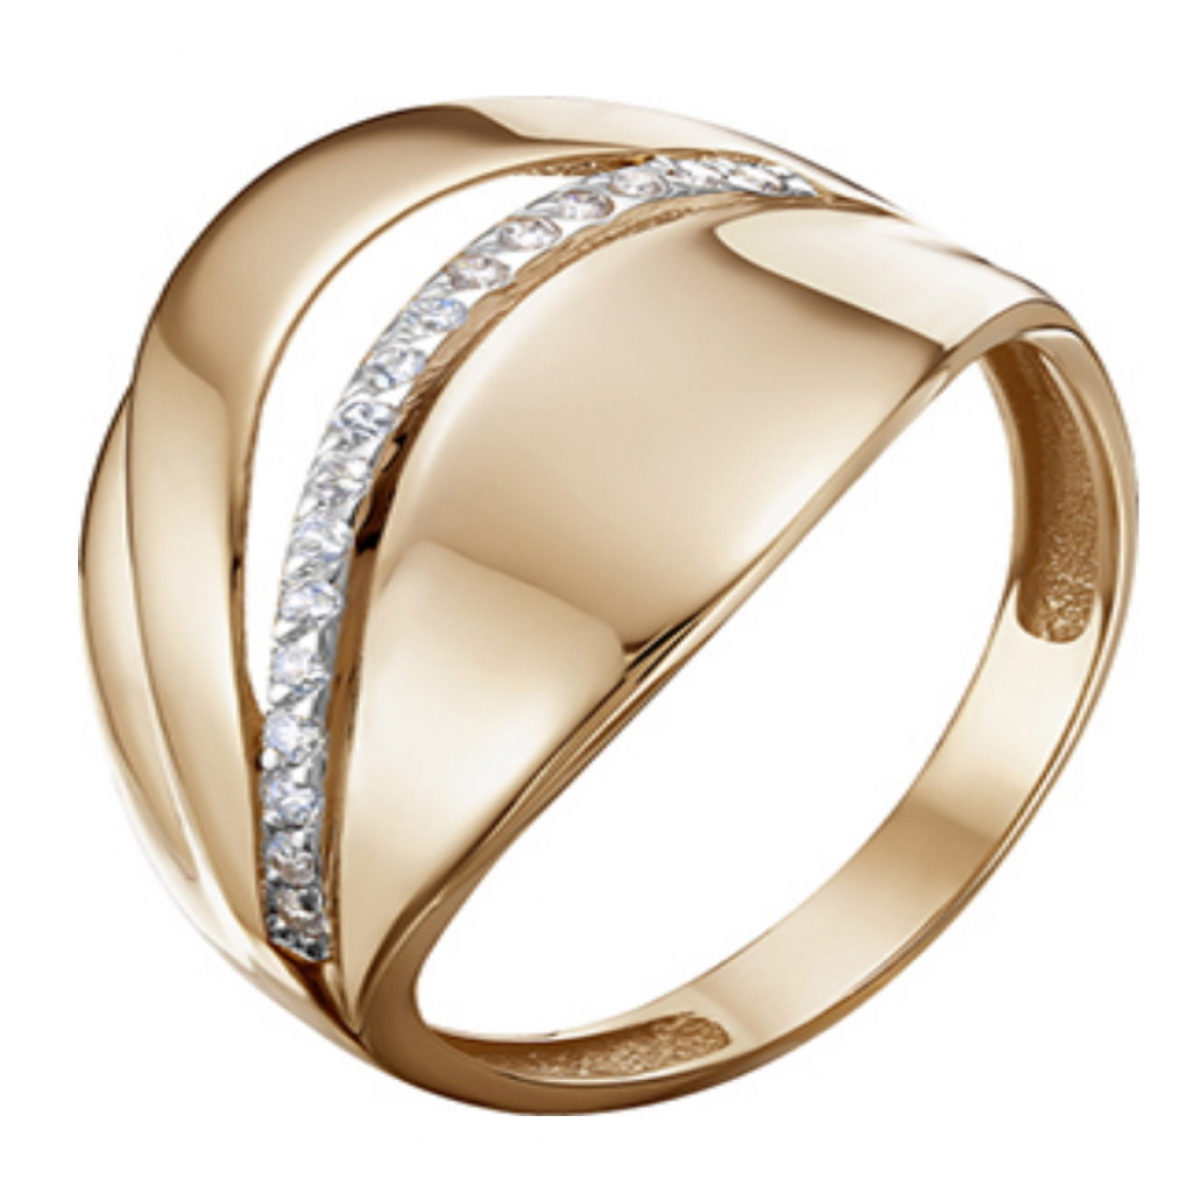 Золотое кольцо Красносельский ювелир ак469. ТД золото.